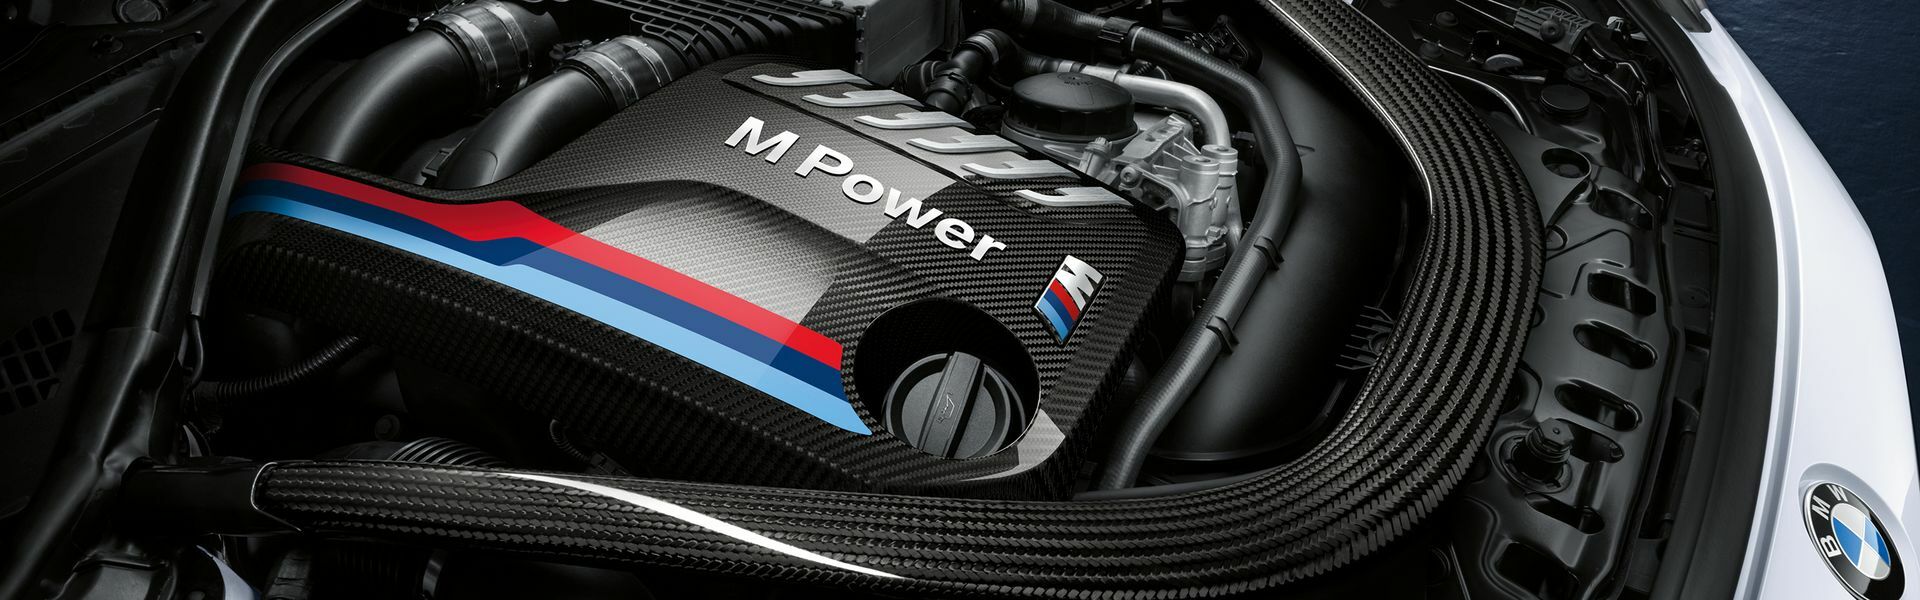 Zvýšení výkonu/ Softwarové úpravy/ Drobné performance díly pro automobil McLaren 650S / 650S SPIDER